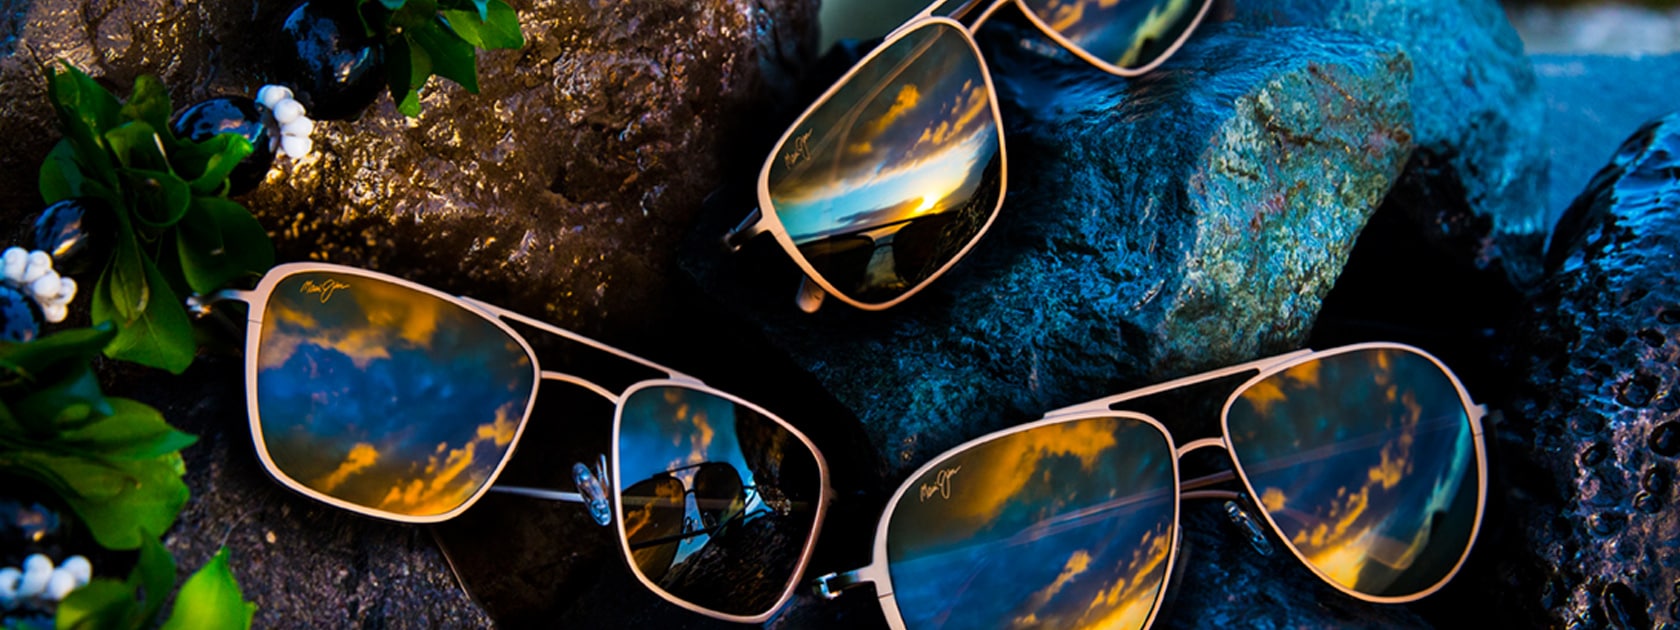 tre diversi occhiali da sole in titanio opaco mostrati sopra a rocce bagnate